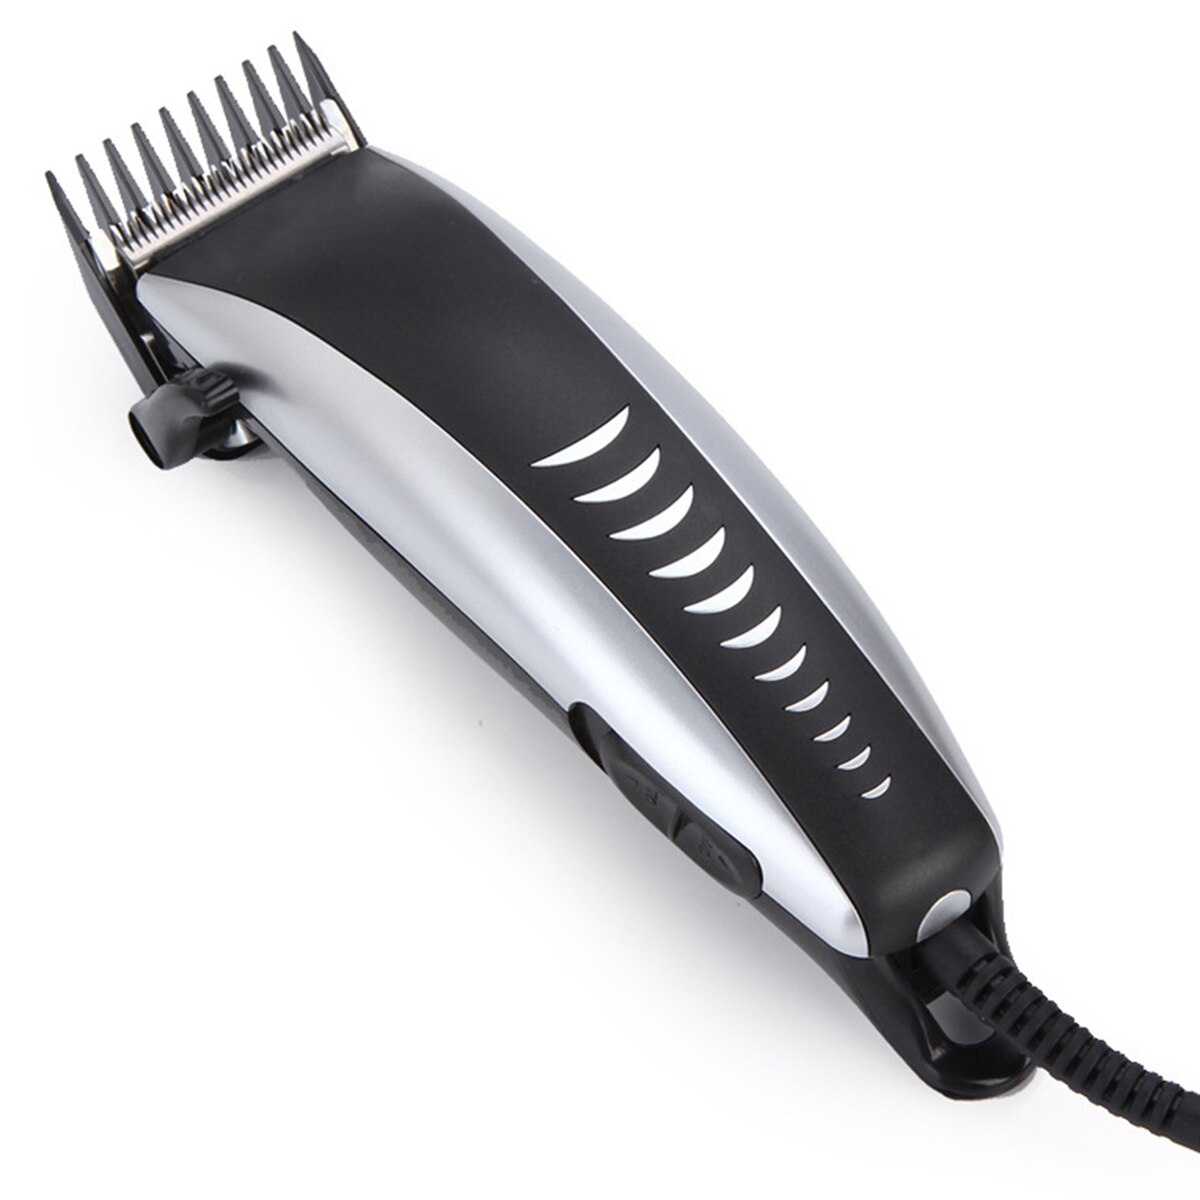 cord hair trimmer electric hair clipper beard trimmer men trimer hair cutting machine haircut barber finishing kit